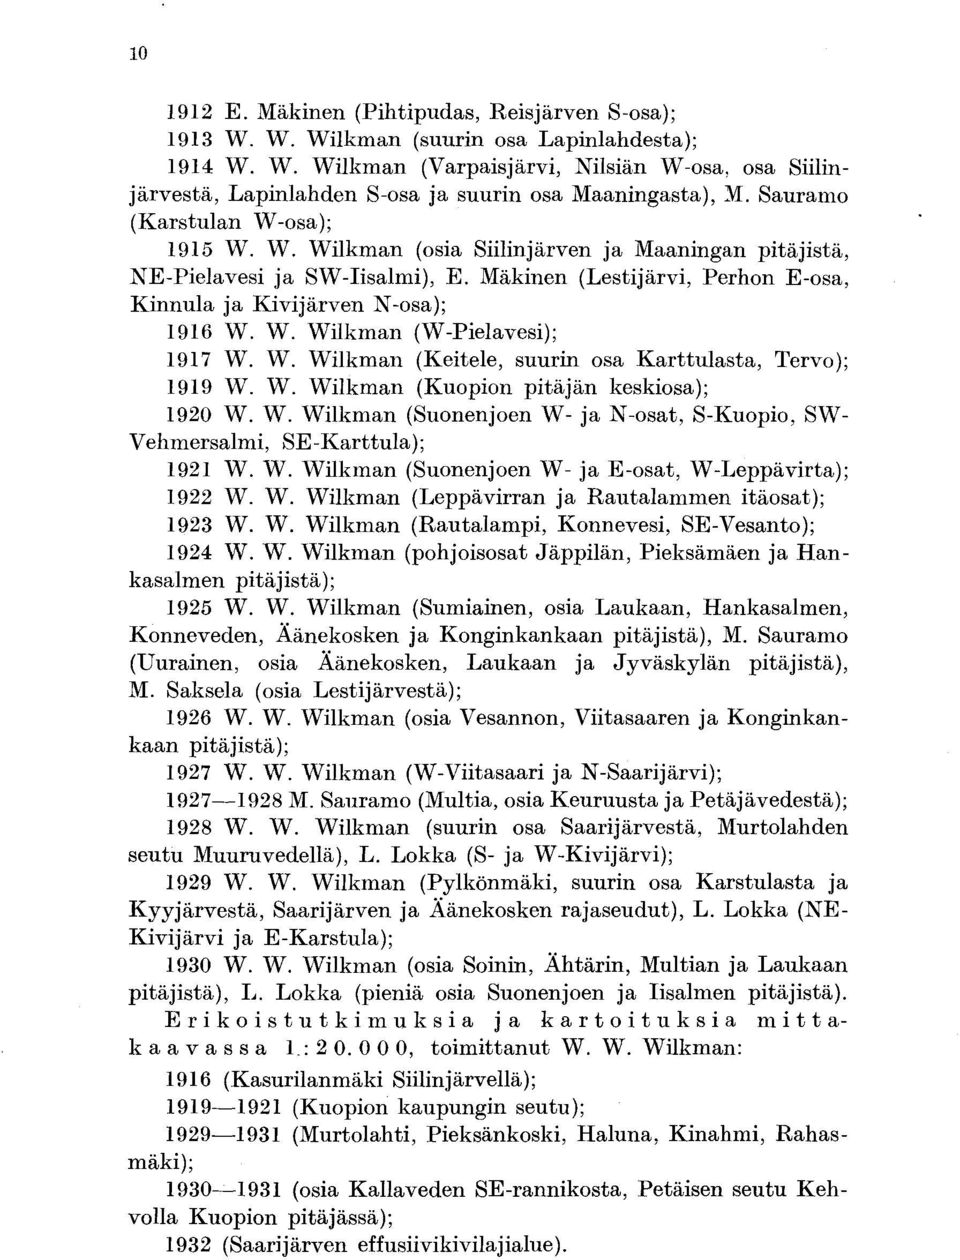 W. Wilkman (Keitele, suurin osa Karttulasta, Tervo) ; 1919 W. W. Wilkman (Kuopion pitäjän keskiosa) ; 1920 W. W. Wilkman (Suonenjoen W- ja N-osat, S-Kuopio, SW- Vehmersalmi, SE-Karstula) ; 1921 W. W. Wilkman (Suonenjoen W- ja E-osat, W-Leppävirta) ; 1922 W.